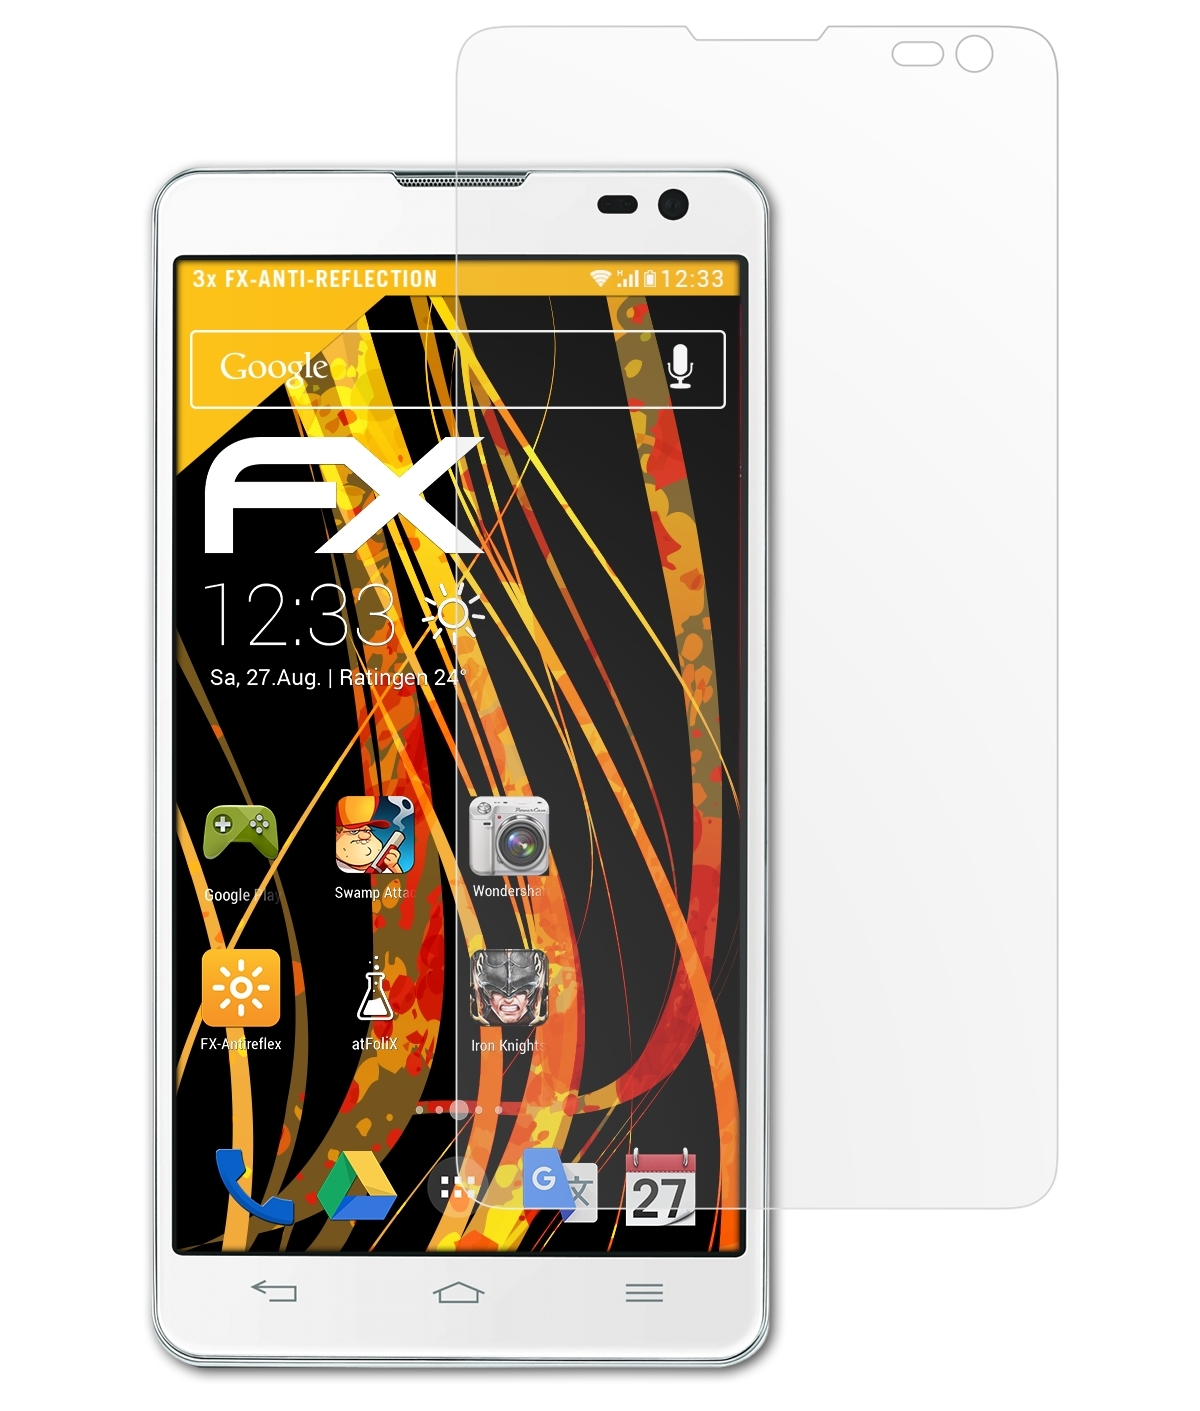 ATFOLIX 3x Displayschutz(für FX-Antireflex Optimus L9 LG (D605)) II